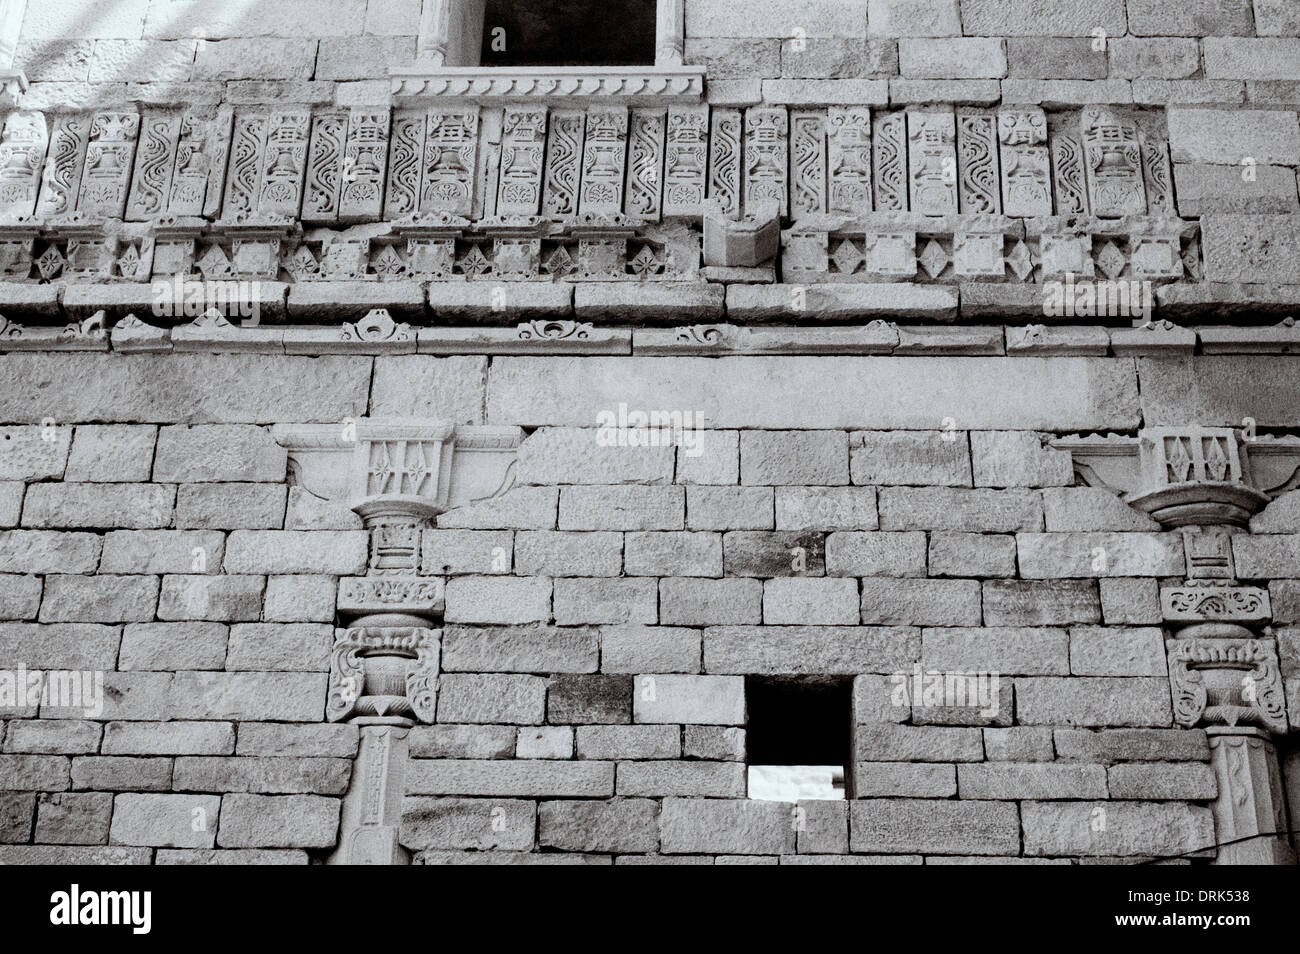 L'architecture Rajput dans Jaisalmer au Rajasthan en Inde en Asie du Sud. Mégalithe de l'histoire ancienne du bâtiment en pierre historique Billet Wanderlust Banque D'Images